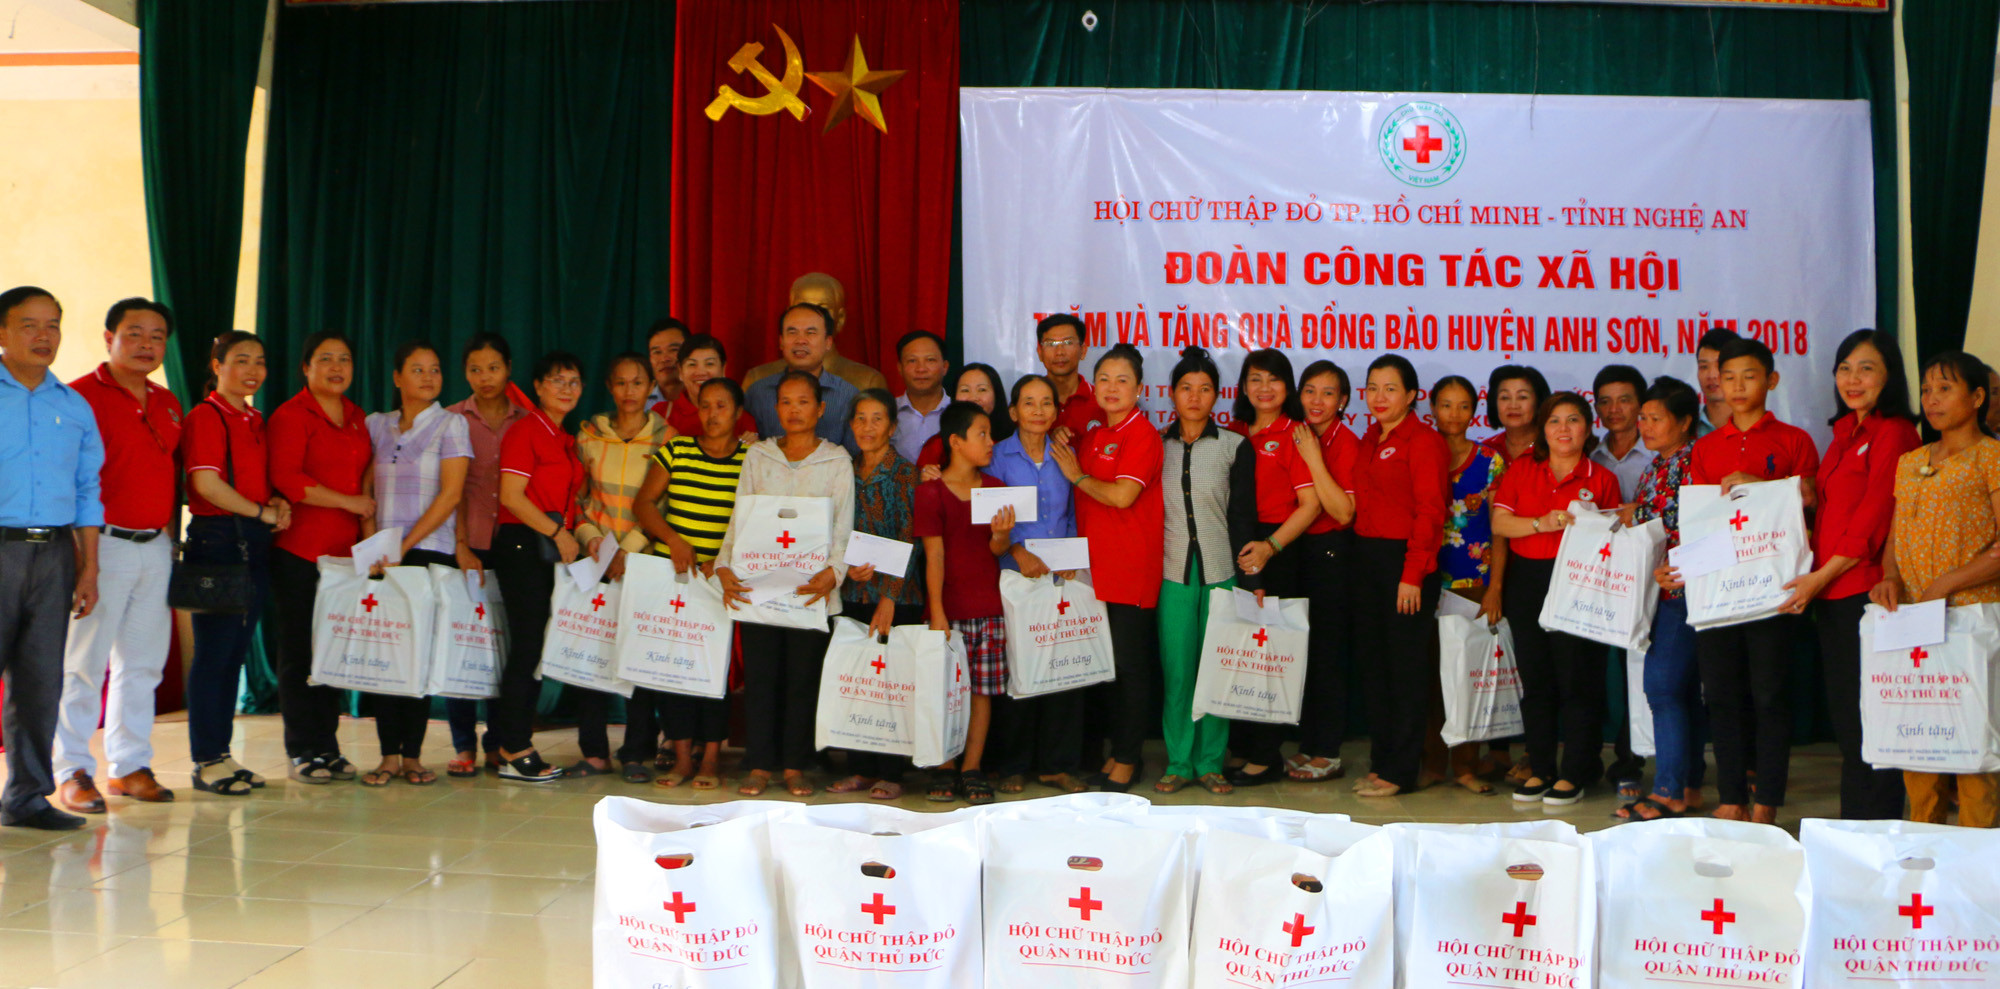 Tại xã Long Sơn, đoàn trao quà cho 50 hộ thuộc 10 xã bị ảnh hưởng bởi đợt mưa và xả lũ huyện Anh Sơn. Ảnh: Nguyễn Hải